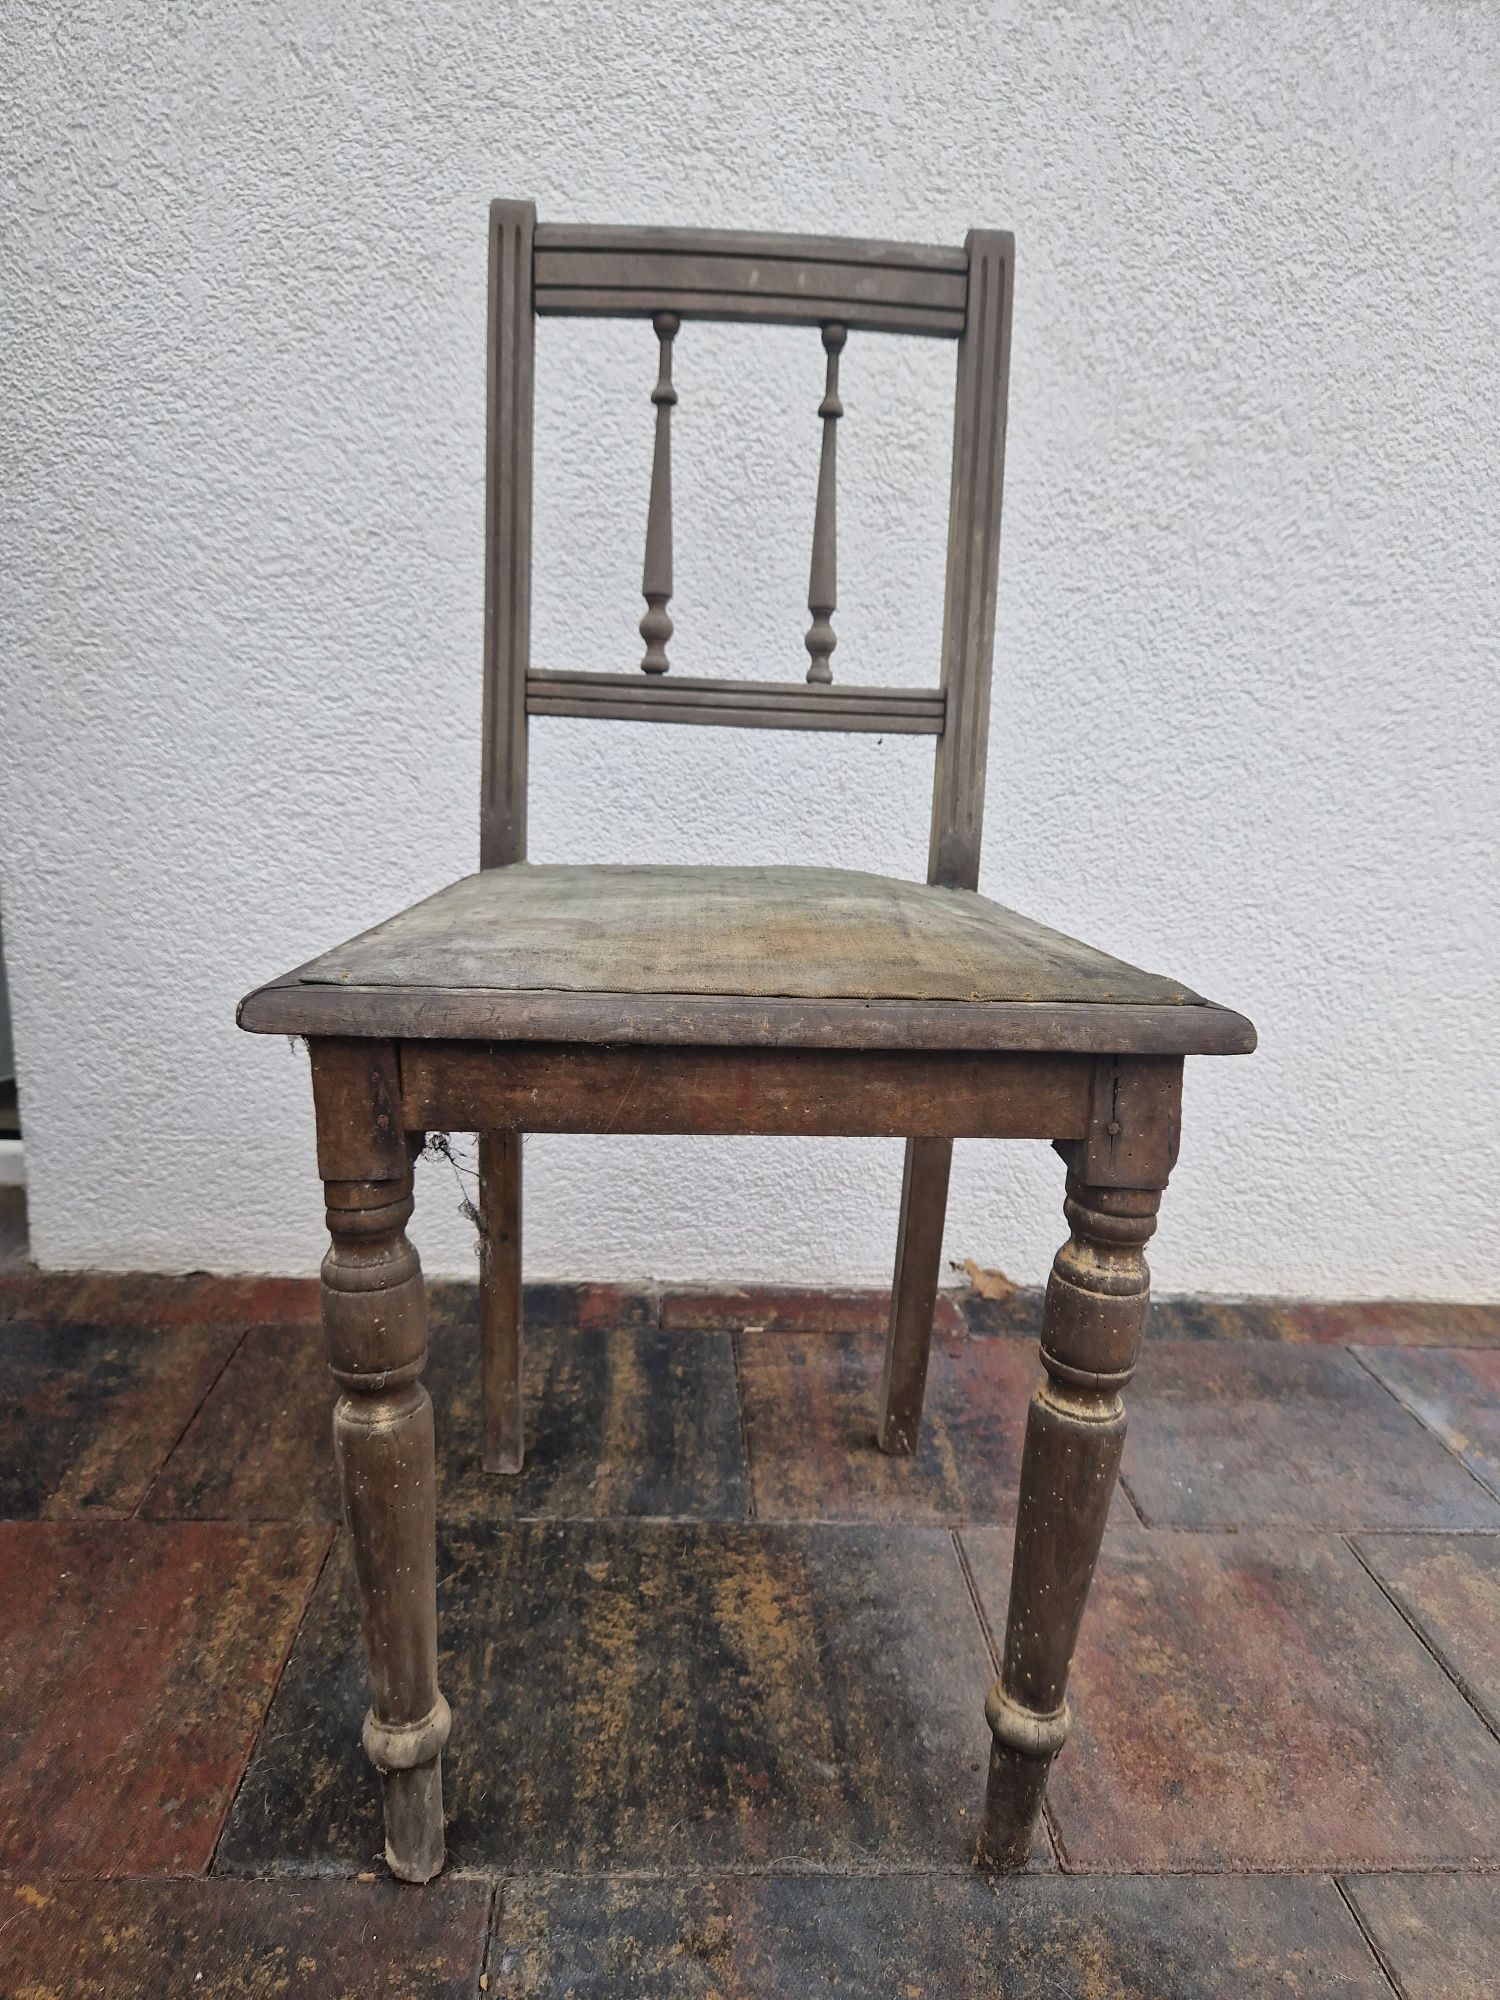 Stare antyczne krzesło do renowacji